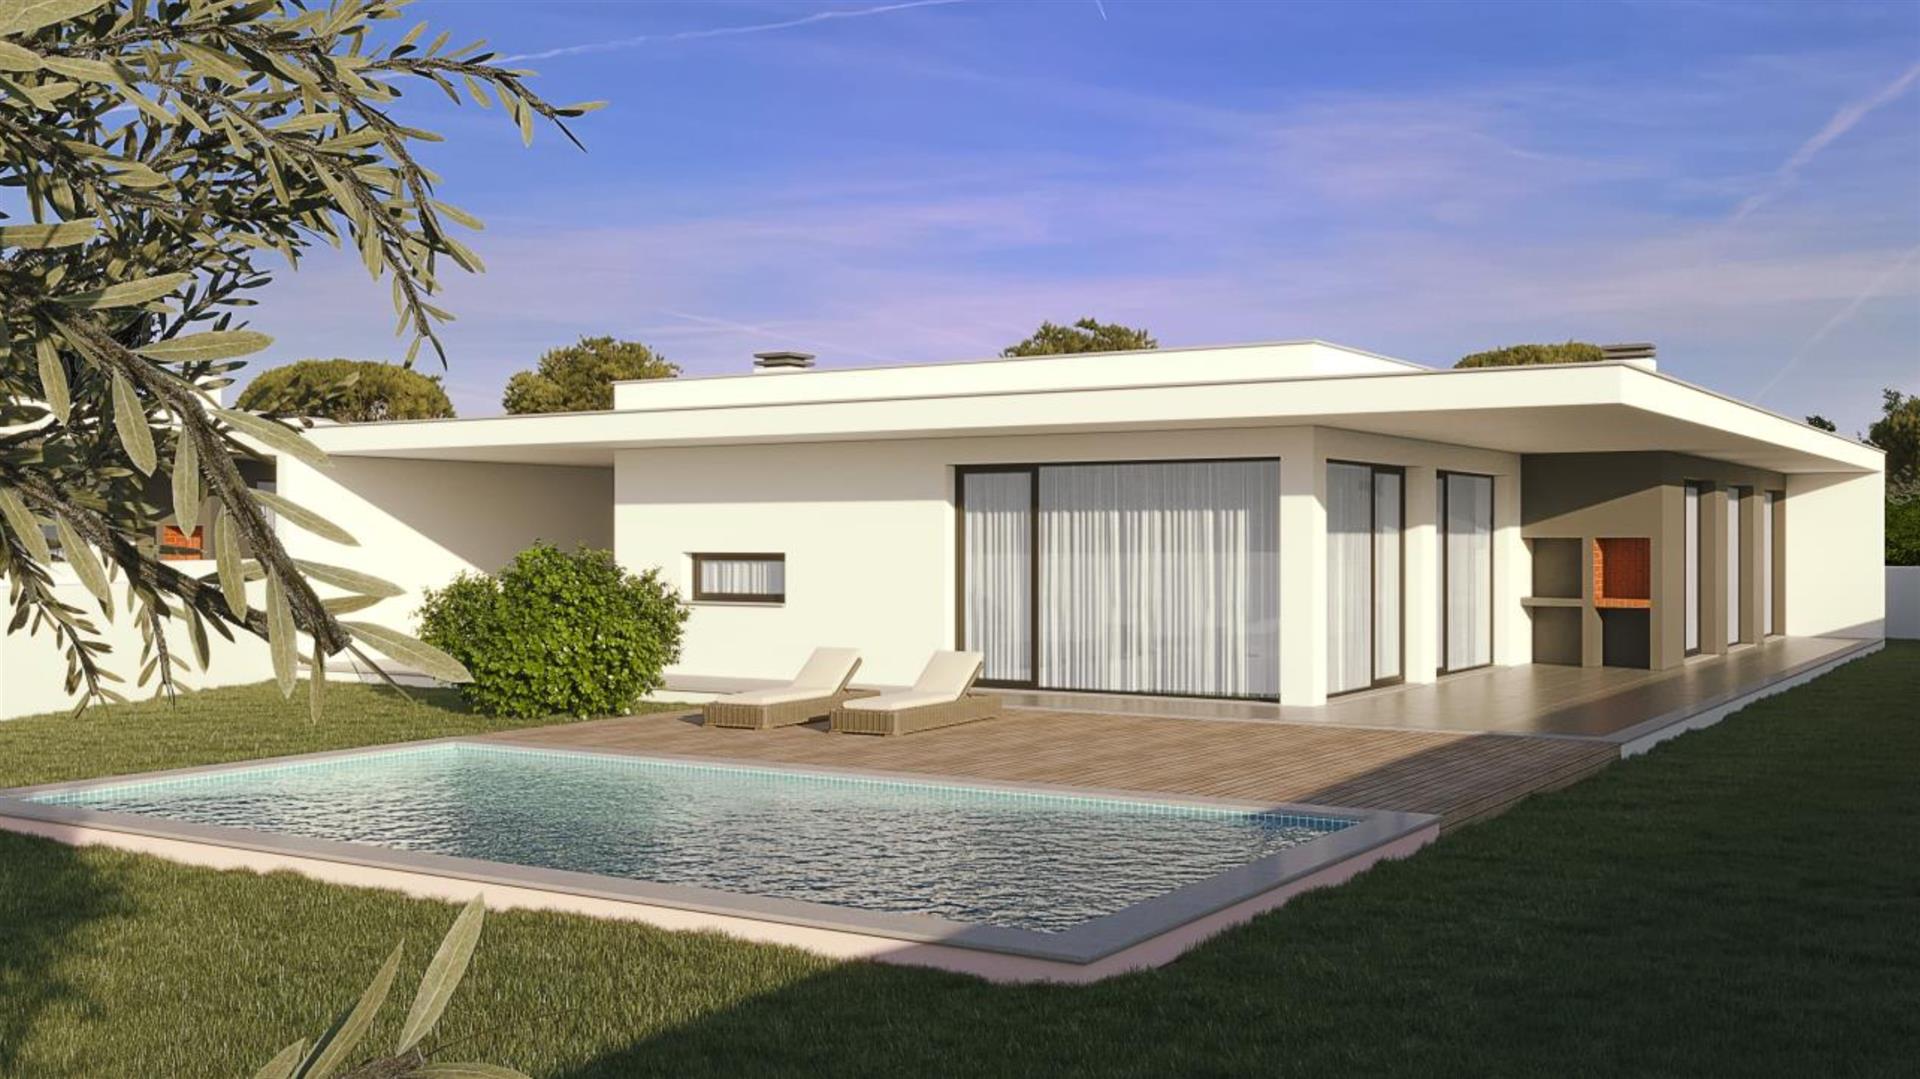 New 3 bedroom villa with swimming pool in Famalicão da Nazaré